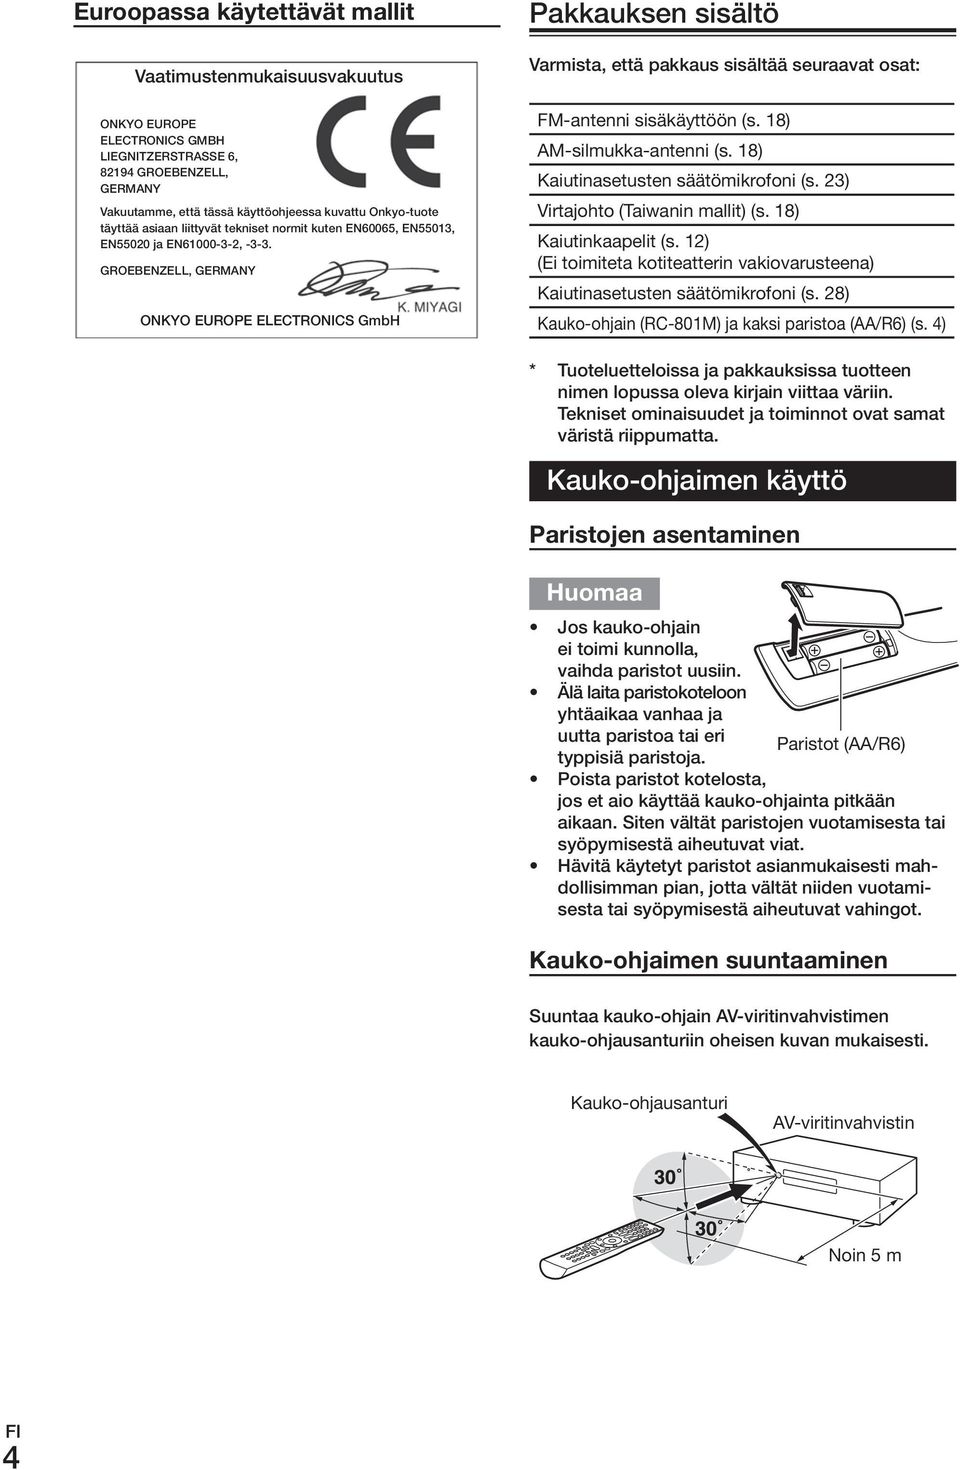 GroEBENzELL, GErmANy onkyo EuroPE ELECTroNICS GmbH Pakkauksen sisältö Varmista, että pakkaus sisältää seuraavat osat: FM-antenni.sisäkäyttöön.(s..18) AM-silmukka-antenni.(s..18) Kaiutinasetusten.